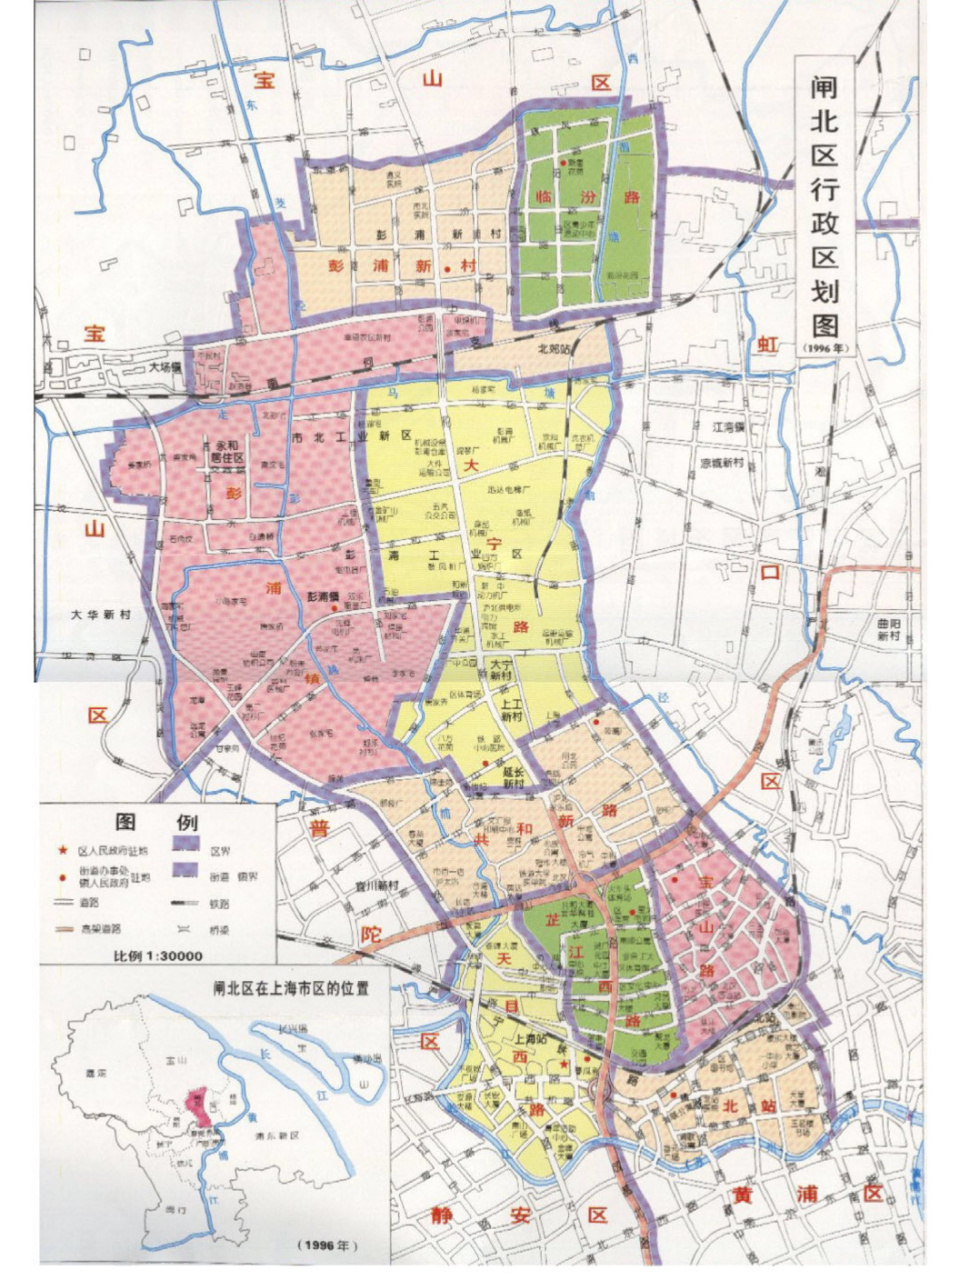 上海闸北区旧行政区划图